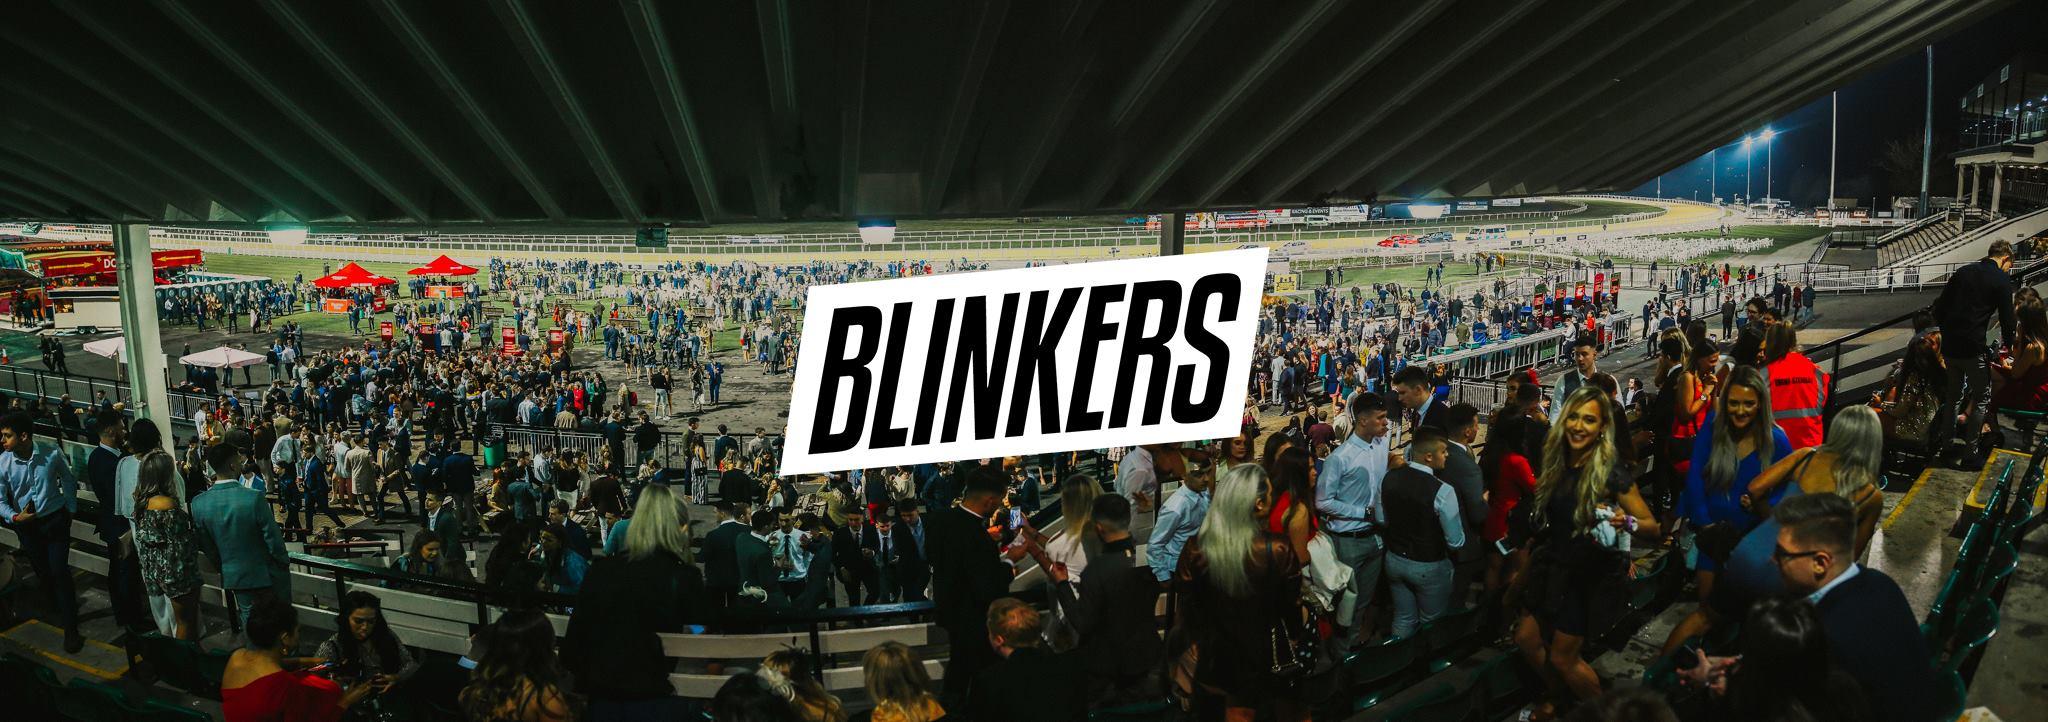 Blinkers